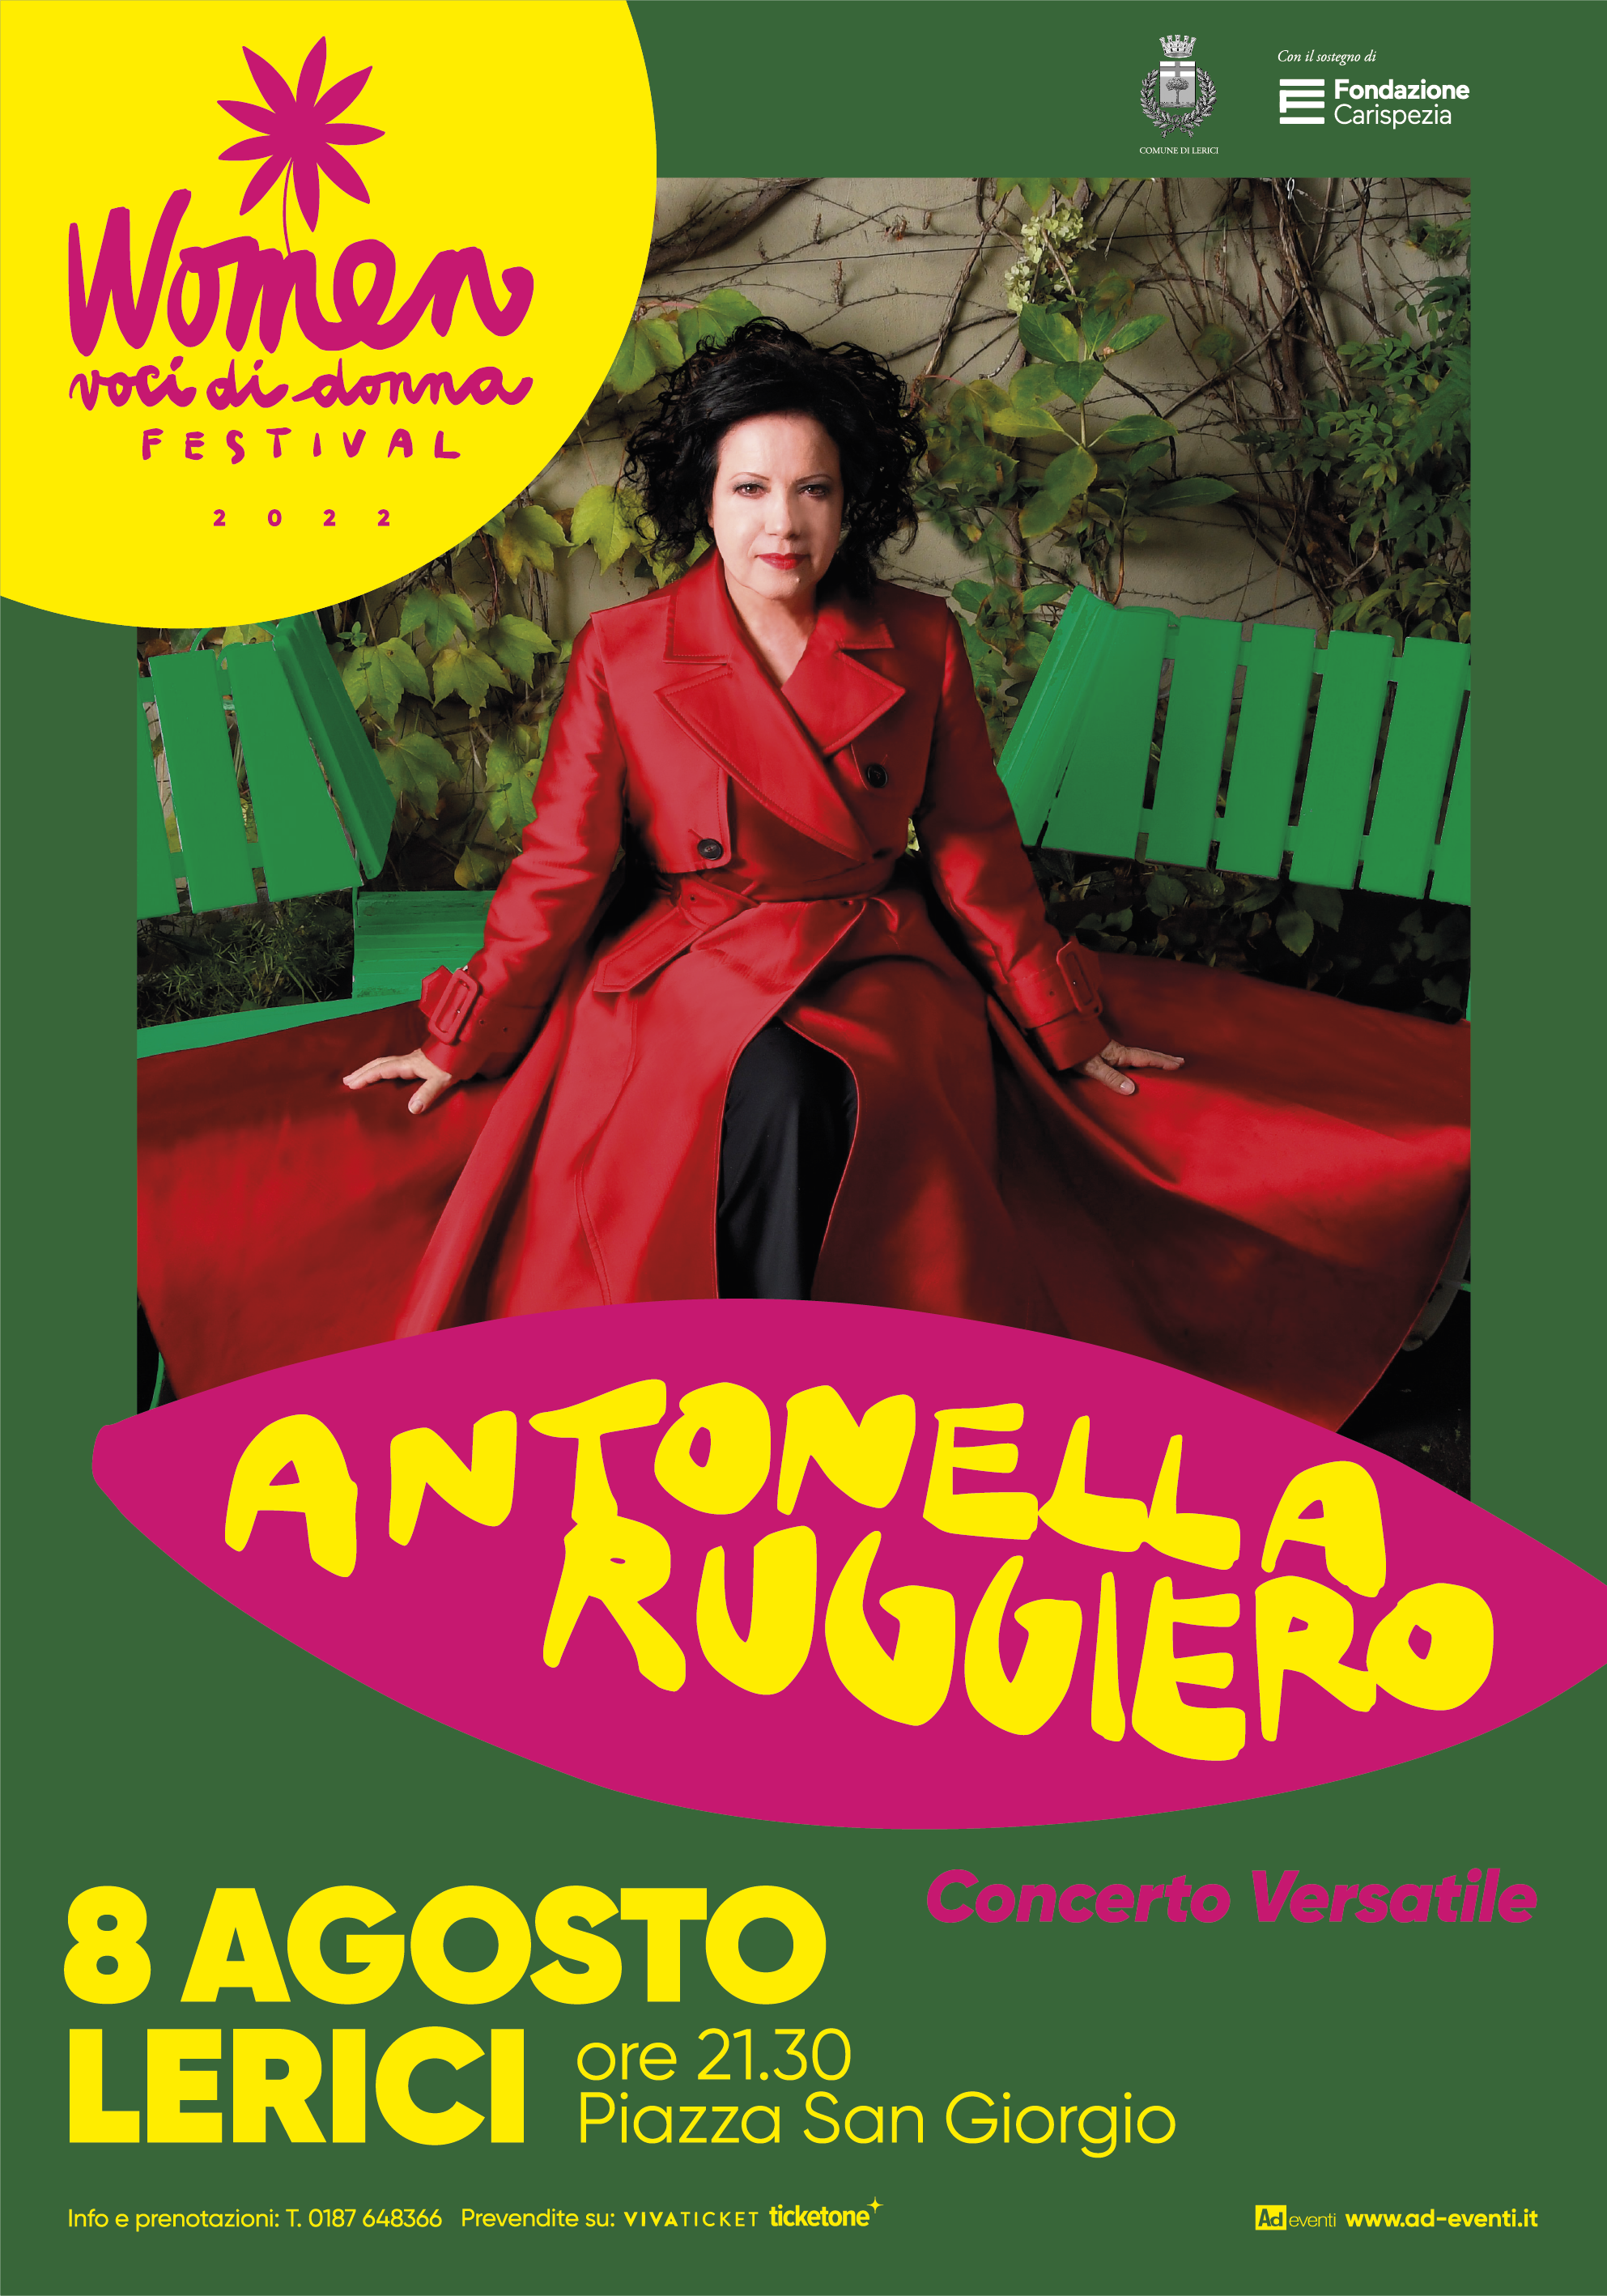 Antonella Ruggiero in Concerto Versatile – P.zza San Giorgio, Lerici